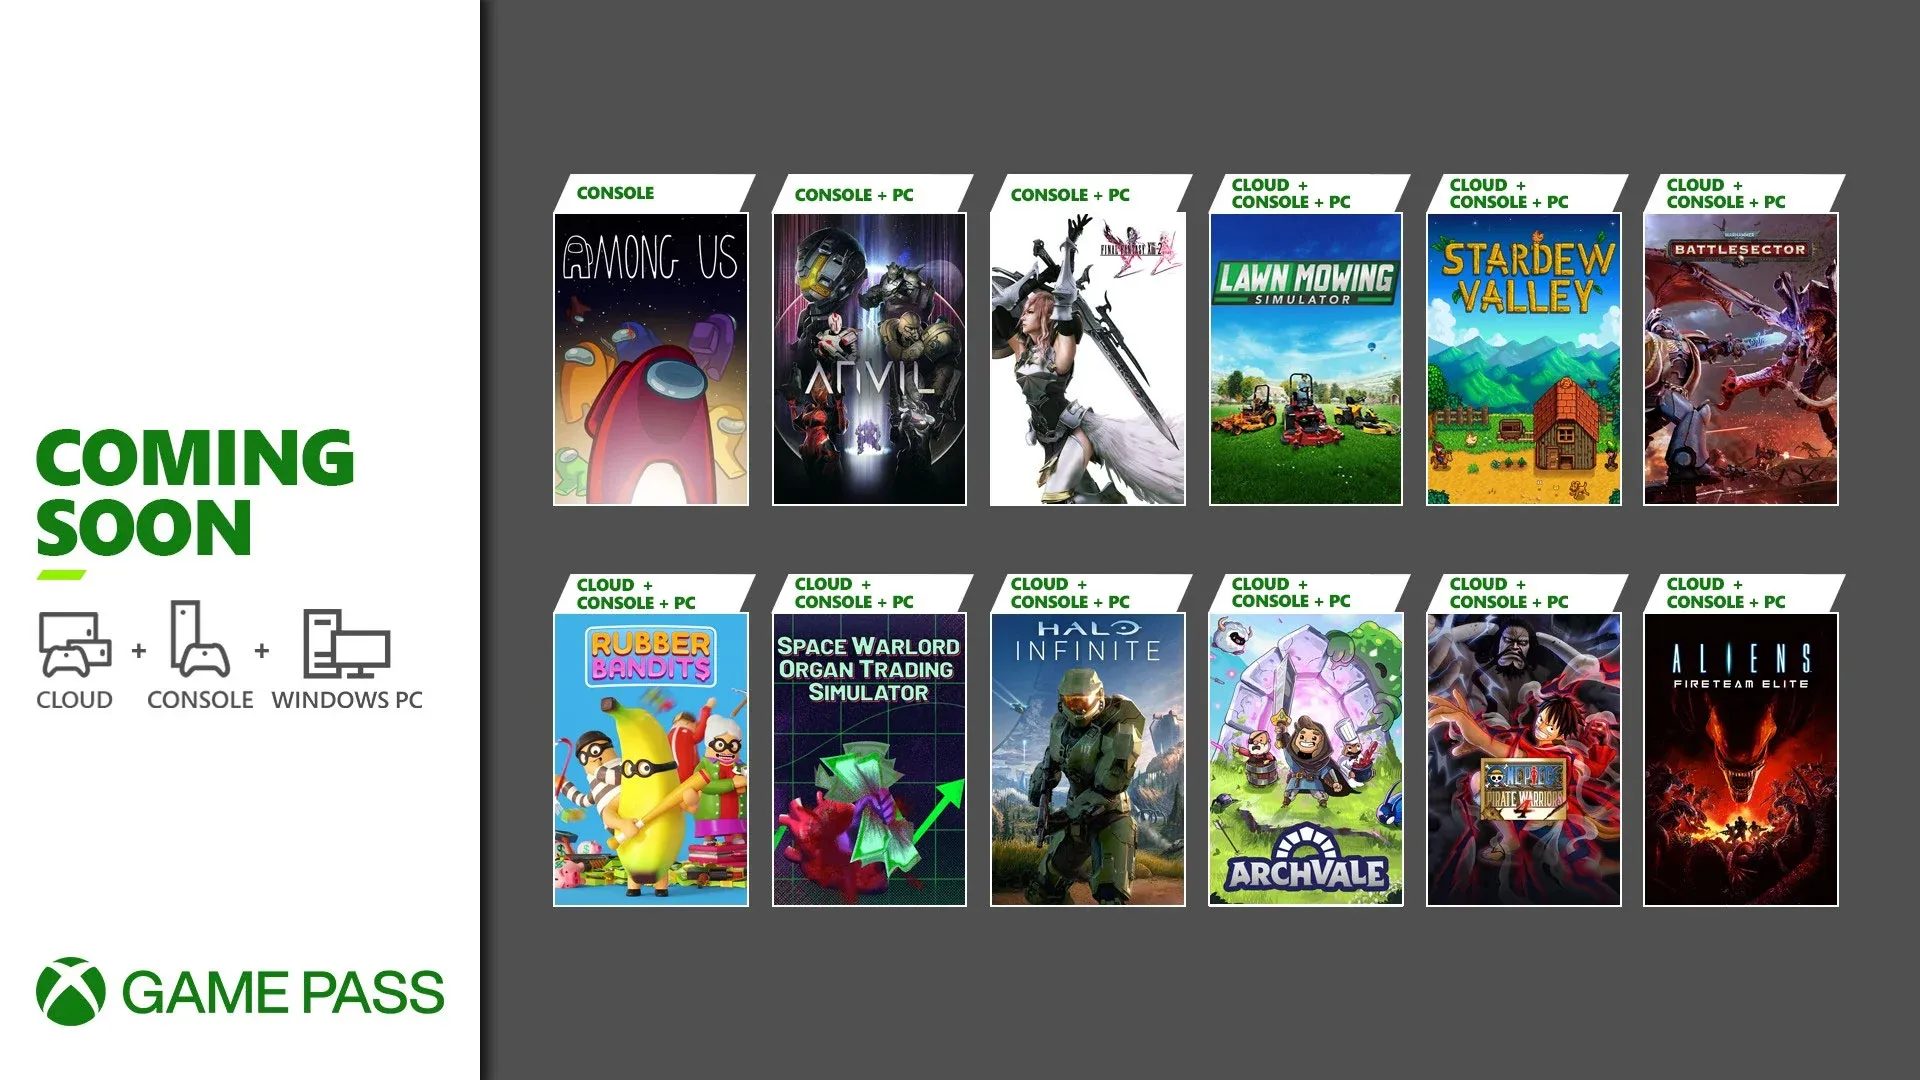  Imagem com artes em formato de caixa dos jogos adicionados no Xbox Game Pass dividida em duas fileiras de seis itens, com Among Us, Final Fantasy XIII-2, Stardew Valley, Halo Infinite e mais